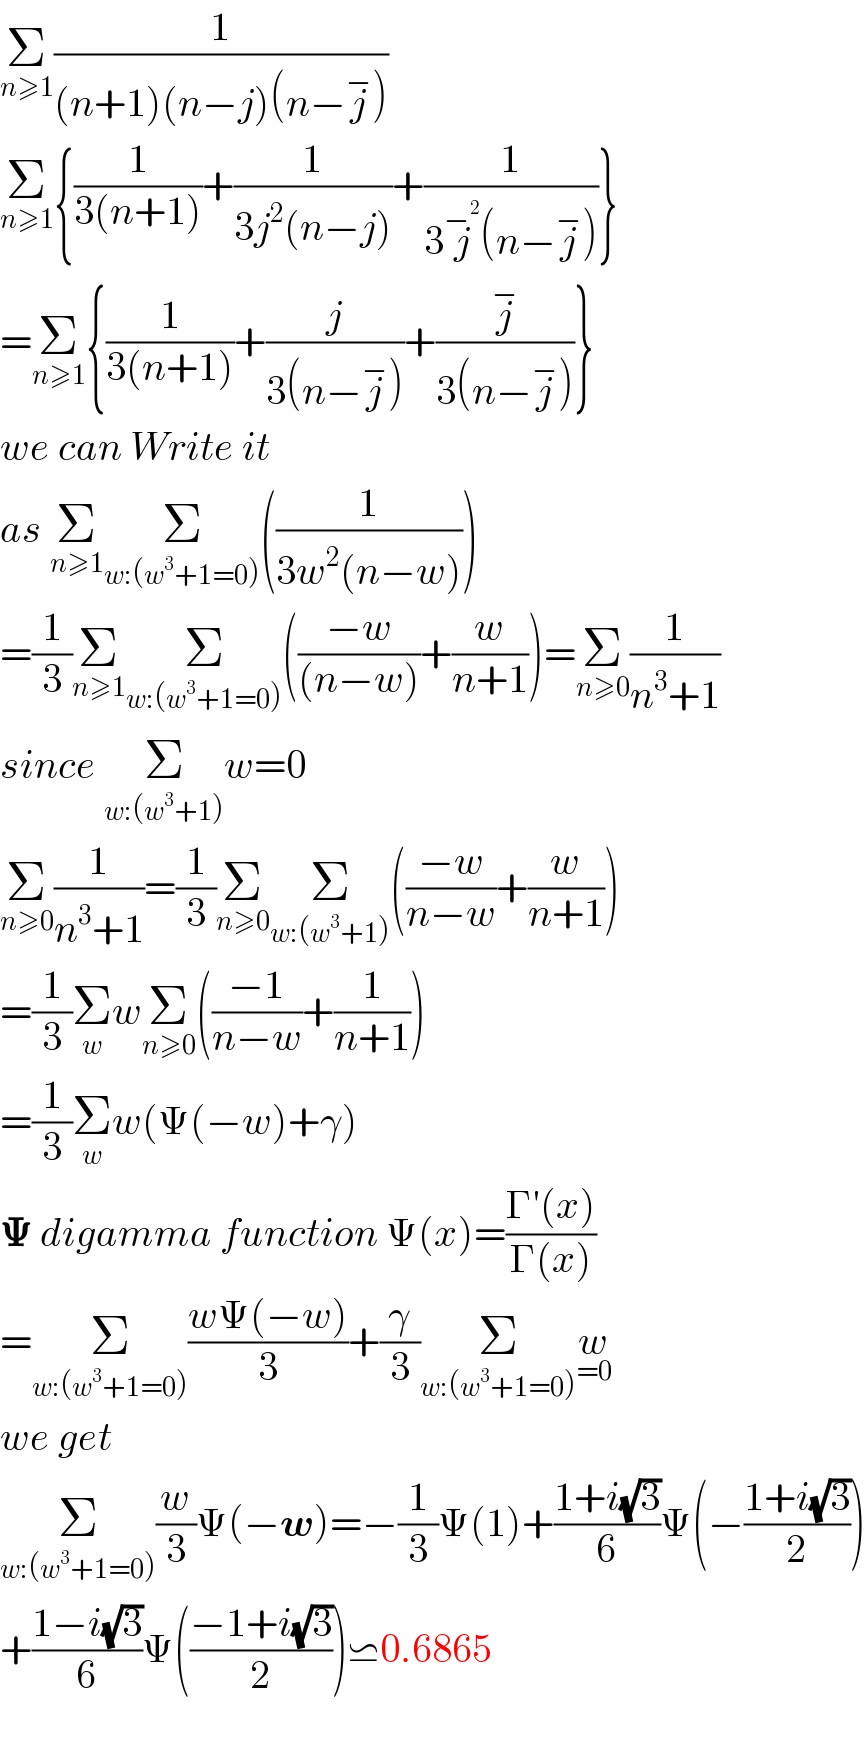 Σ_(n≥1) (1/((n+1)(n−j)(n−j^− )))  Σ_(n≥1) {(1/(3(n+1)))+(1/(3j^2 (n−j)))+(1/(3j^−^2  (n−j^− )))}  =Σ_(n≥1) {(1/(3(n+1)))+(j/(3(n−j^− )))+(j^− /(3(n−j^− )))}  we can Write it  as Σ_(n≥1) Σ_(w:(w^3 +1=0)) ((1/(3w^2 (n−w))))  =(1/3)Σ_(n≥1) Σ_(w:(w^3 +1=0)) (((−w)/((n−w)))+(w/(n+1)))=Σ_(n≥0) (1/(n^3 +1))  since Σ_(w:(w^3 +1)) w=0   Σ_(n≥0) (1/(n^3 +1))=(1/3)Σ_(n≥0) Σ_(w:(w^3 +1)) (((−w)/(n−w))+(w/(n+1)))  =(1/3)Σ_w wΣ_(n≥0) (((−1)/(n−w))+(1/(n+1)))  =(1/3)Σ_w w(Ψ(−w)+γ)  𝚿 digamma function Ψ(x)=((Γ′(x))/(Γ(x)))  =Σ_(w:(w^3 +1=0)) ((wΨ(−w))/3)+(γ/3)Σ_(w:(w^3 +1=0)) w_(=0)   we get  Σ_(w:(w^3 +1=0)) (w/3)Ψ(−w)=−(1/3)Ψ(1)+((1+i(√3))/6)Ψ(−((1+i(√3))/2))  +((1−i(√3))/6)Ψ(((−1+i(√3))/2))⋍0.6865    